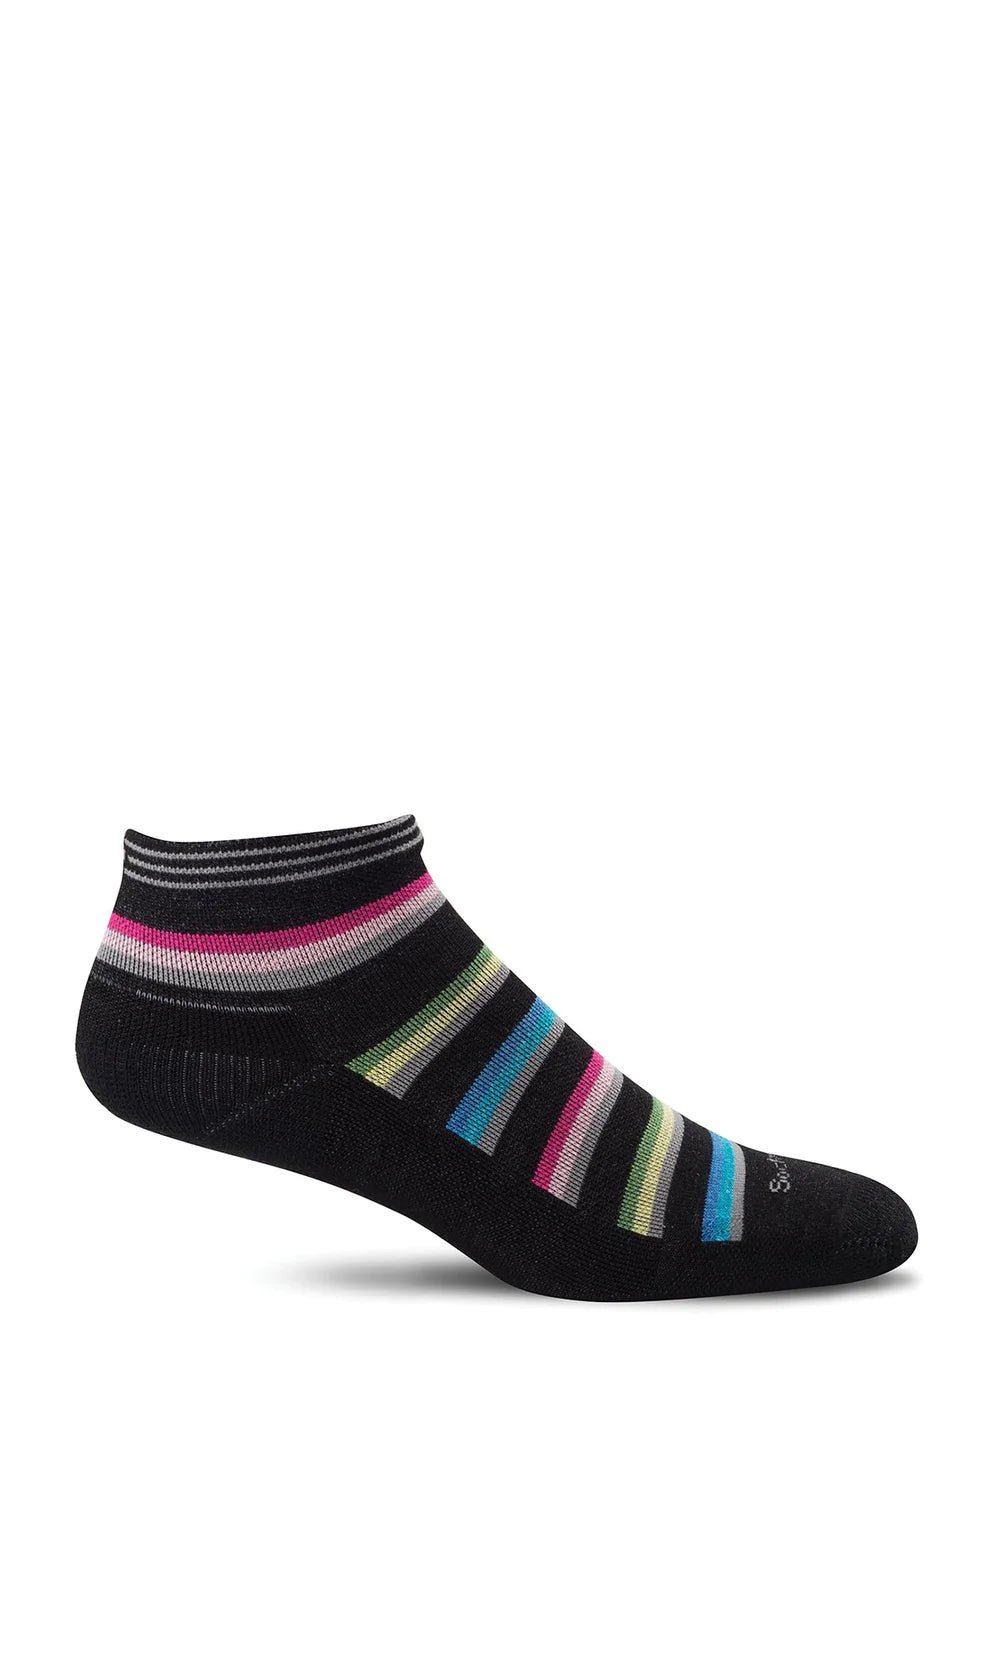 Sockwell - Women's Sport Ease Bunion Relief Socks - Black Stripe